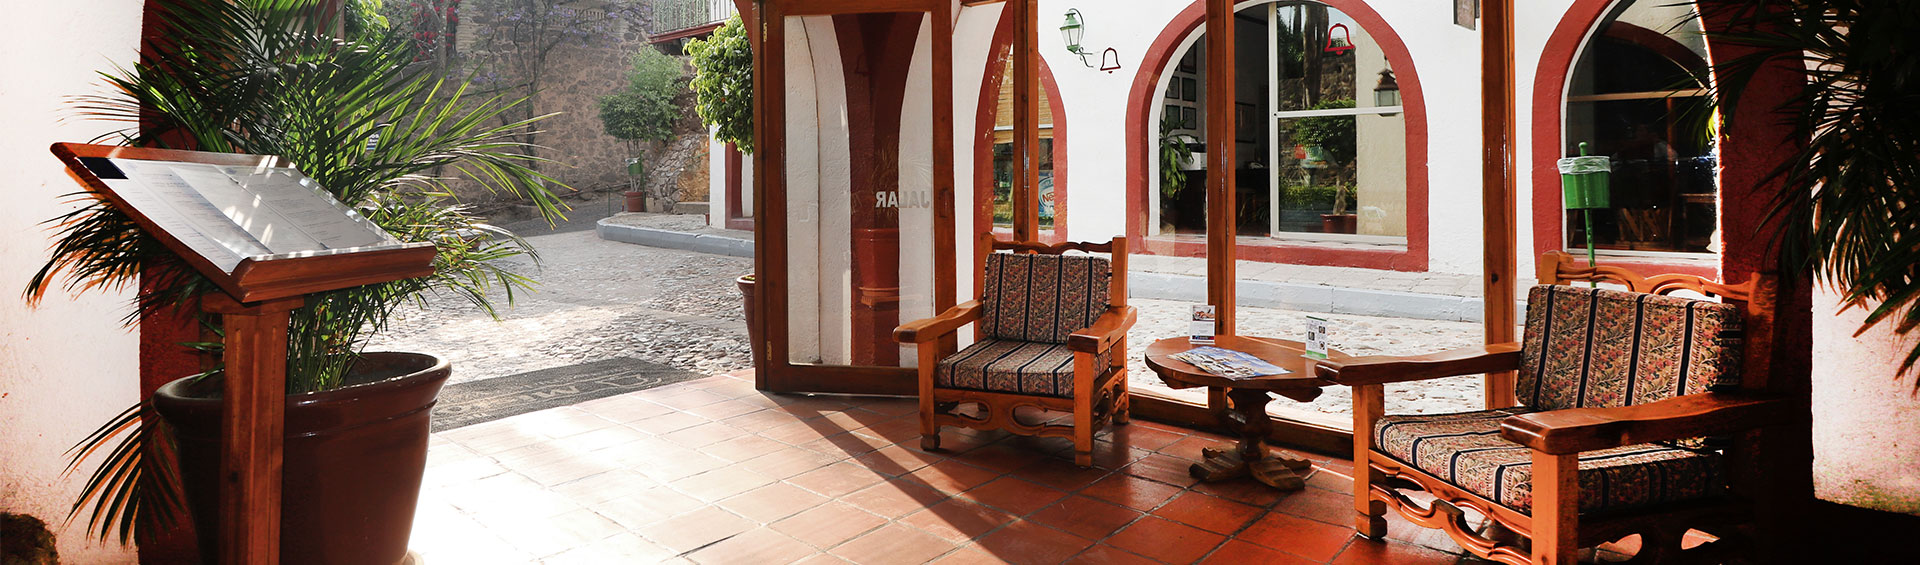 Instalaciones Hotel Misión Guanajuato